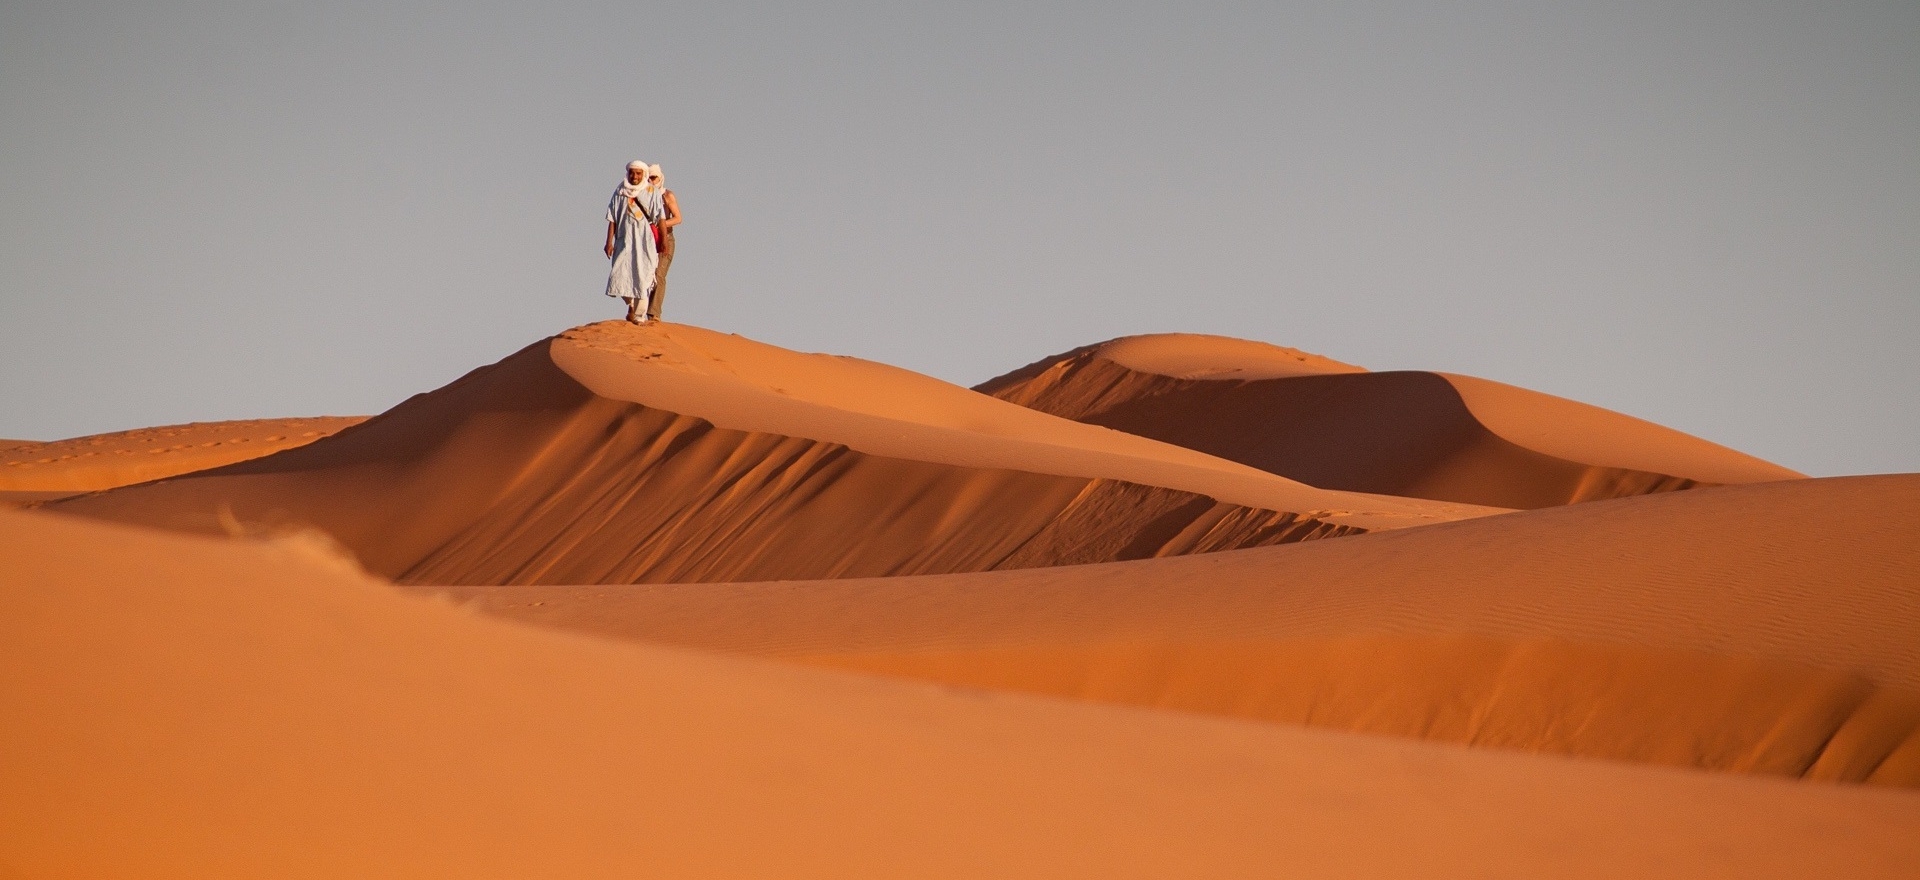 marocco deserto con uomini